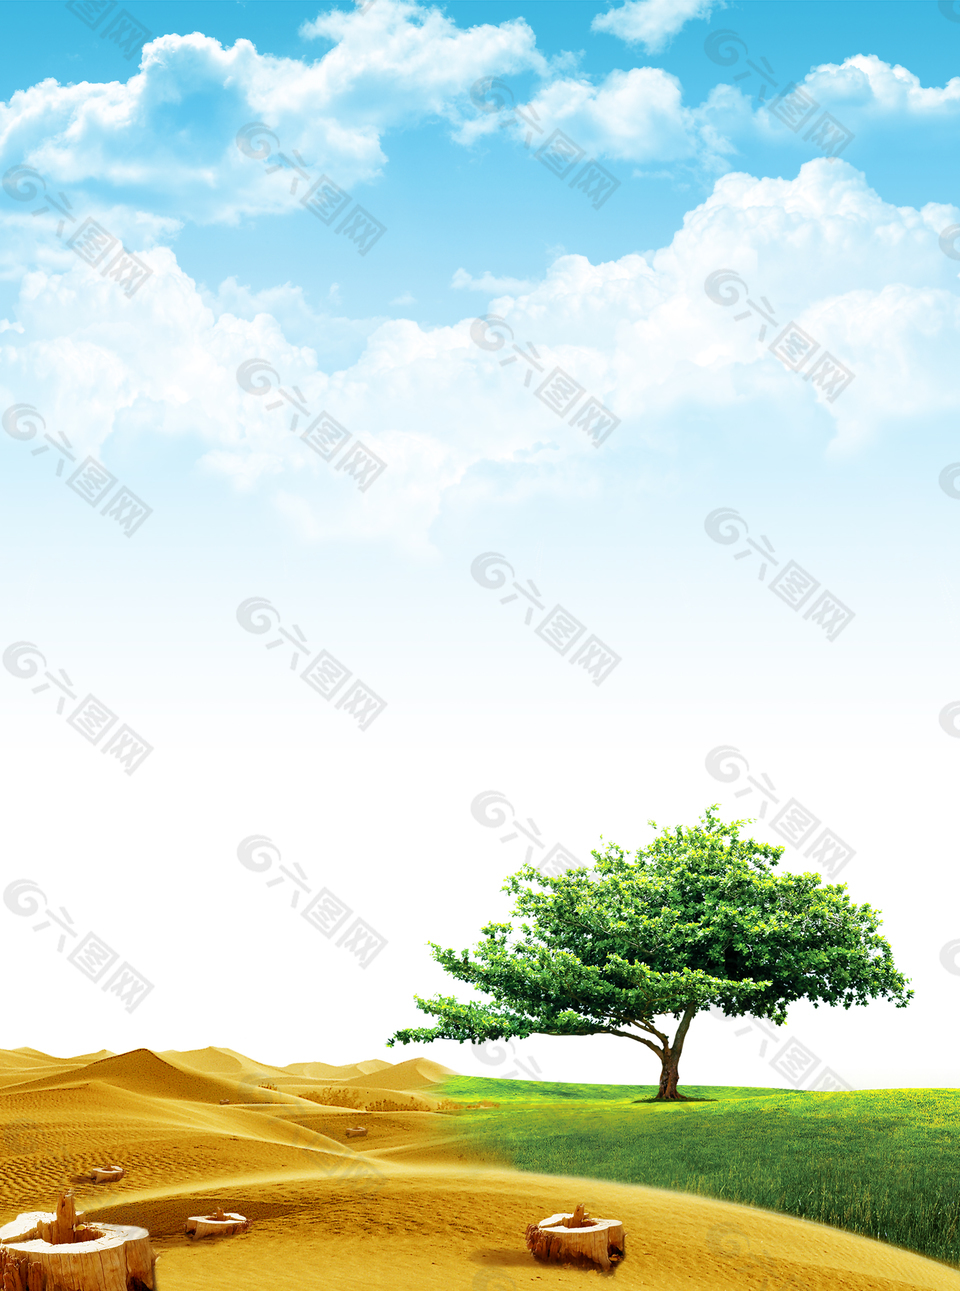 蓝天白云风景沙漠绿洲草地背景素材